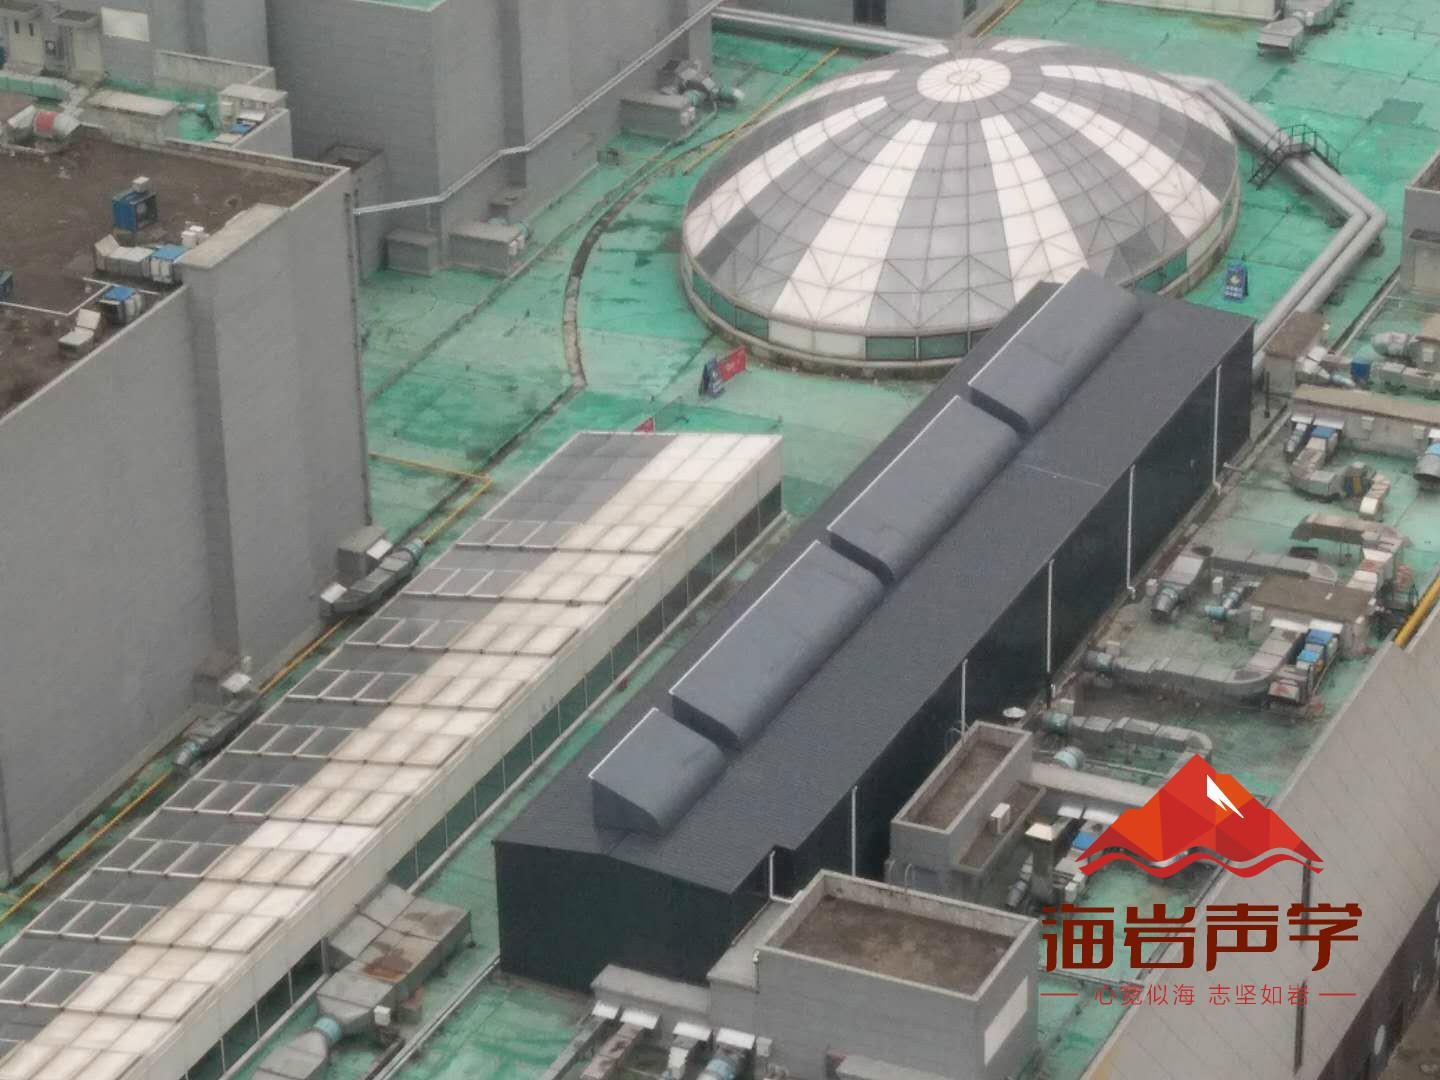 巴中工业降噪设计 四川海岩声学科技有限公司